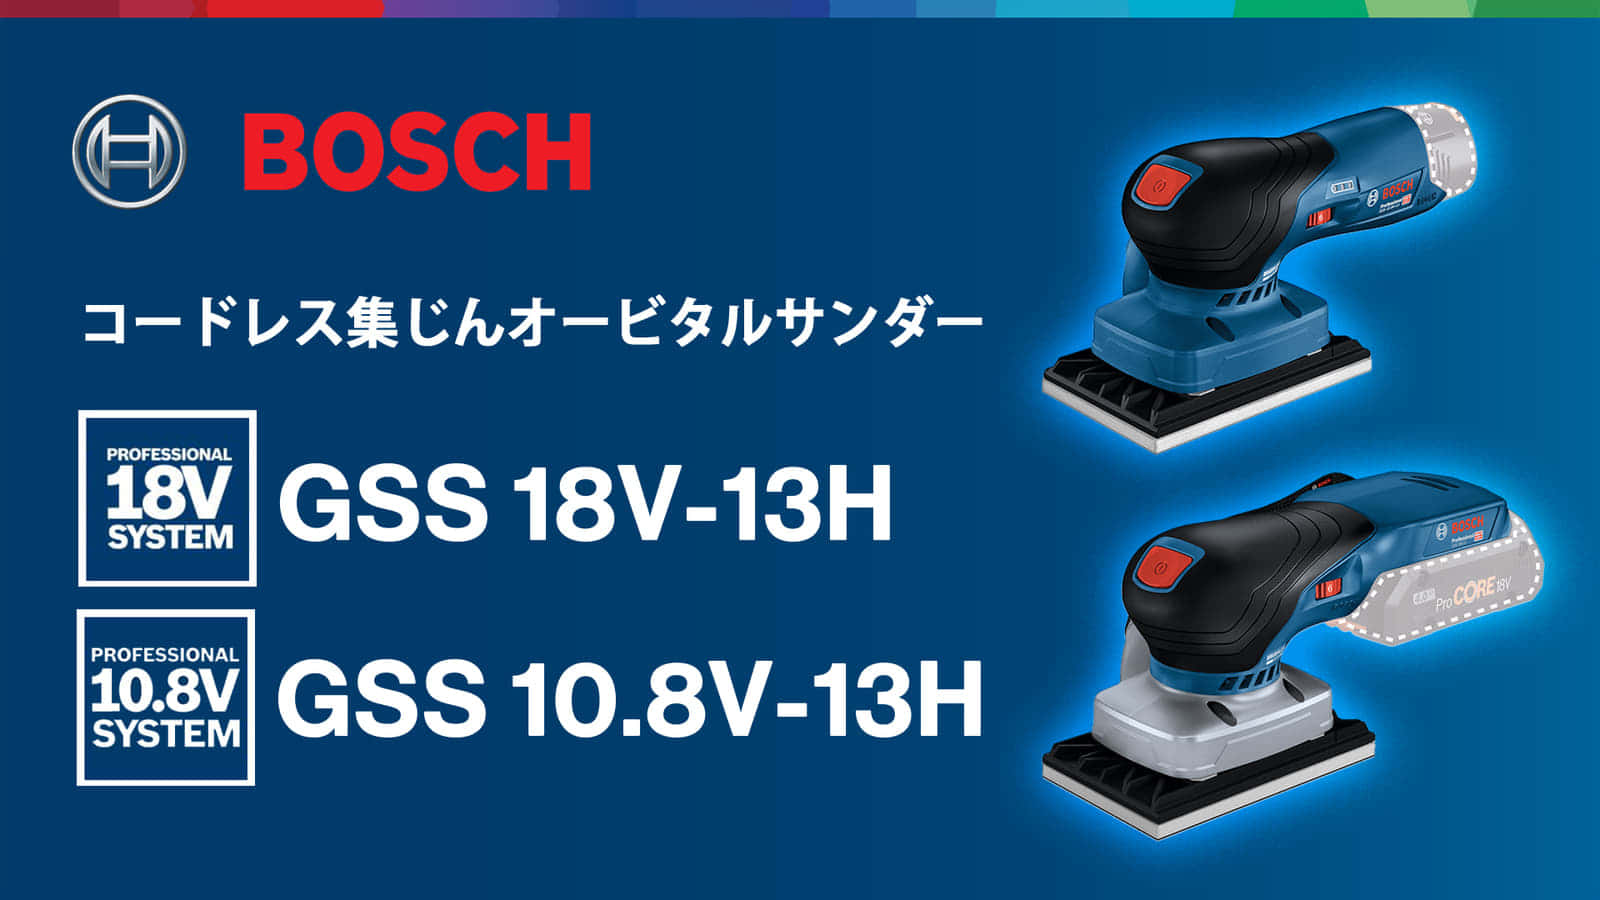 ボッシュ GSS18V-13H/GSS 10.8V-13H オービタルサンダーを発売、3種類のパッドが標準付属